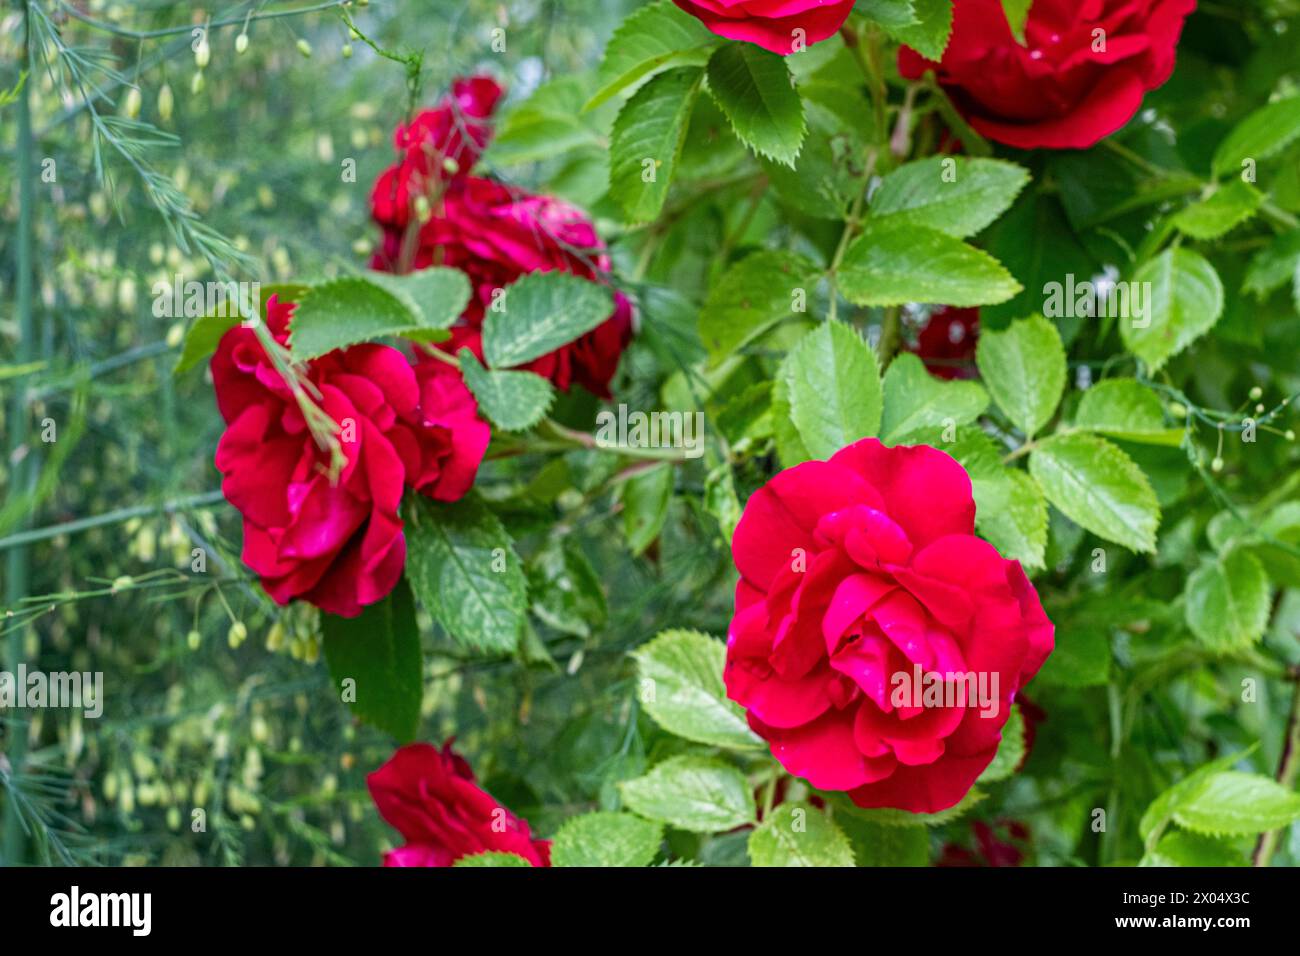 Le vivaci rose rosse fioriscono su uno sfondo verde lussureggiante, l'essenza di un fiorente giardino catturato alla luce del giorno. Foto di alta qualità Foto Stock